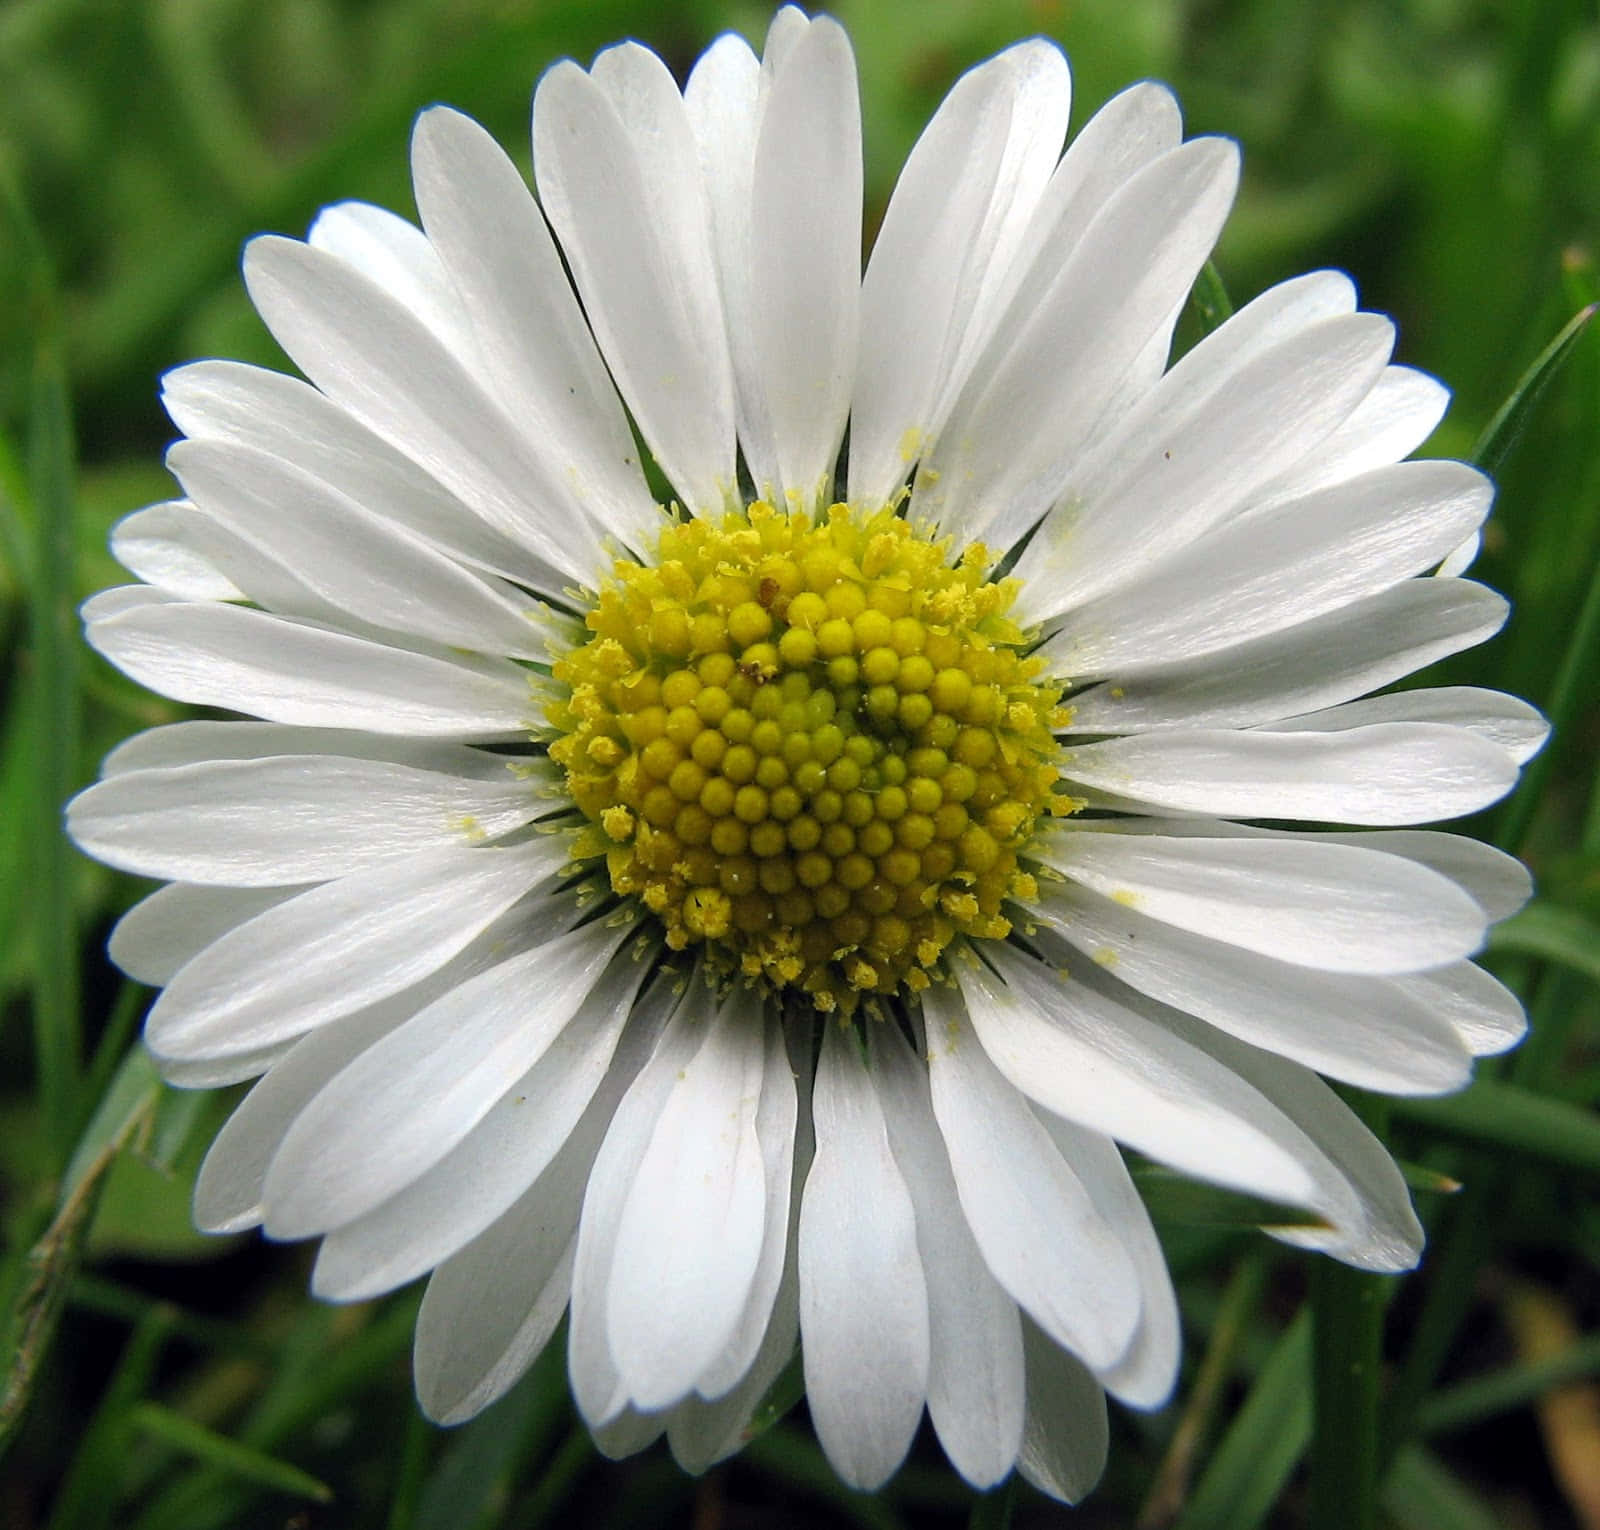 Daisy - The Beauty of Nature